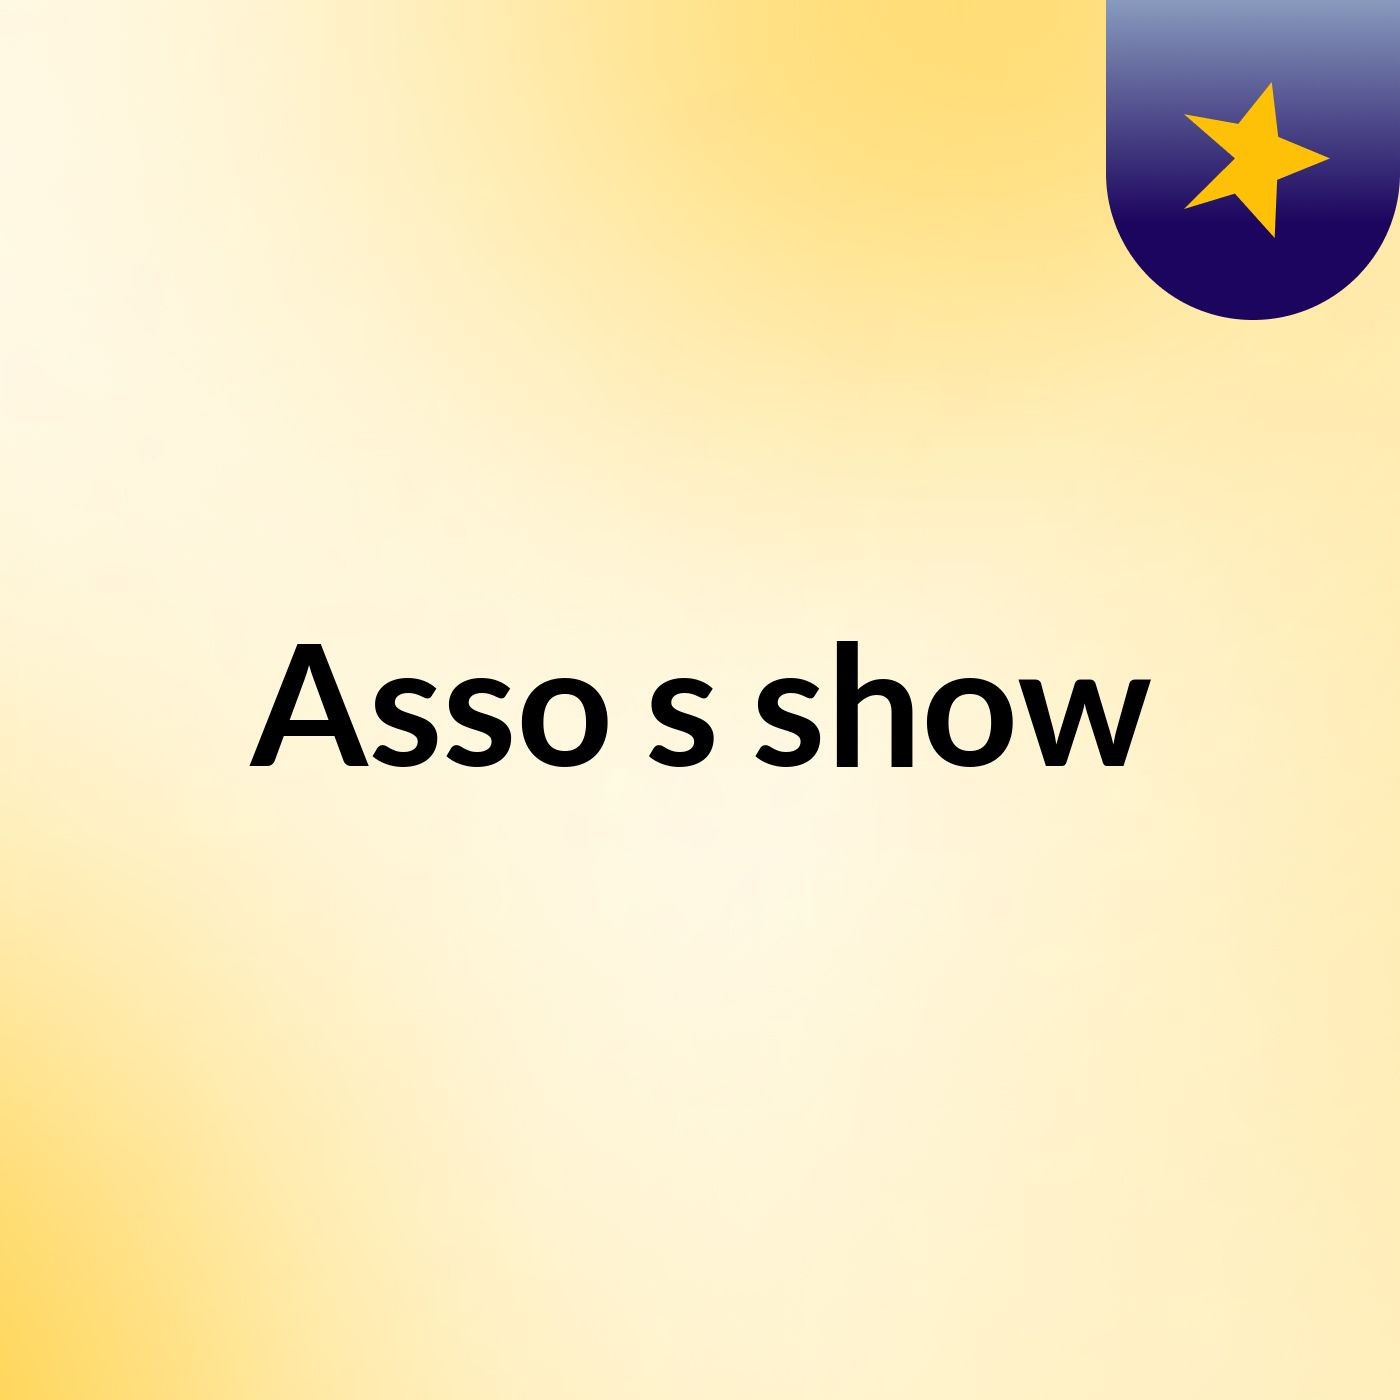 Asso's show